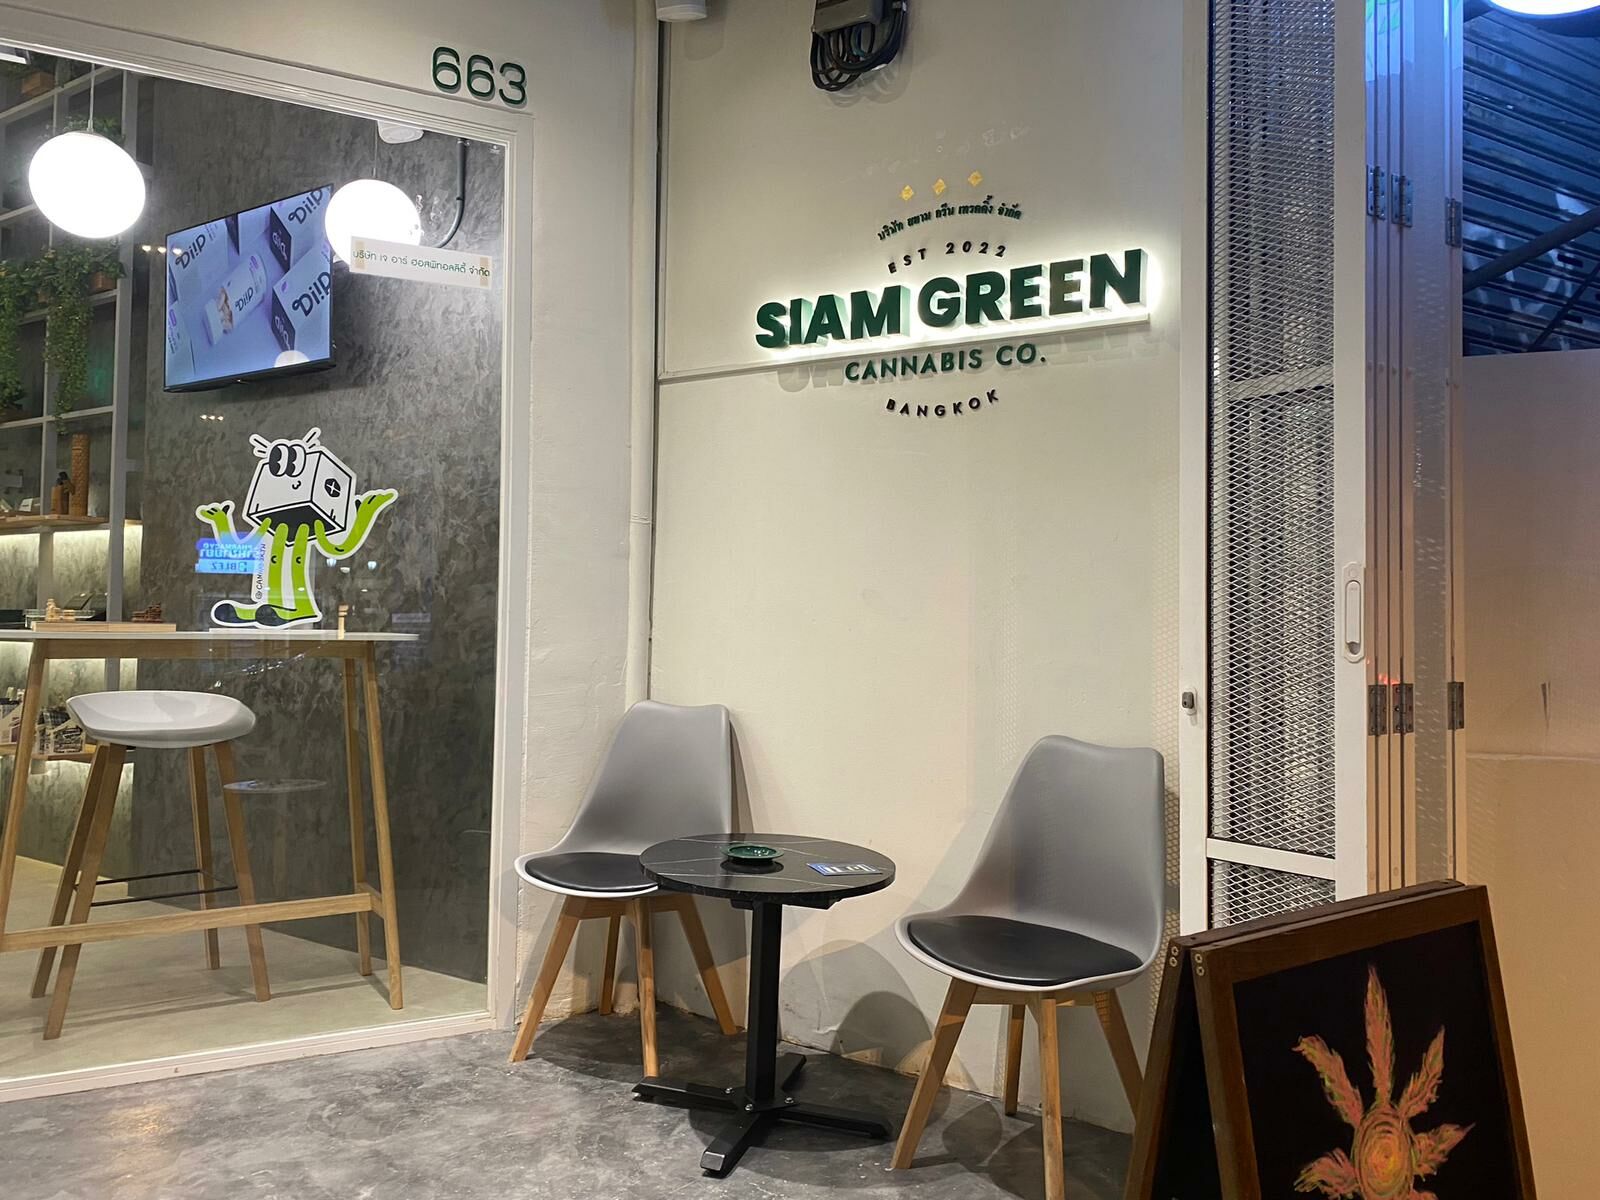 Tee älykkäämpiä valintoja Siam Green Cannabis Co.:lla, joka on kannabiksen ja CBD:n suosikkipaikkasi – Medical Marijuana Program Connection